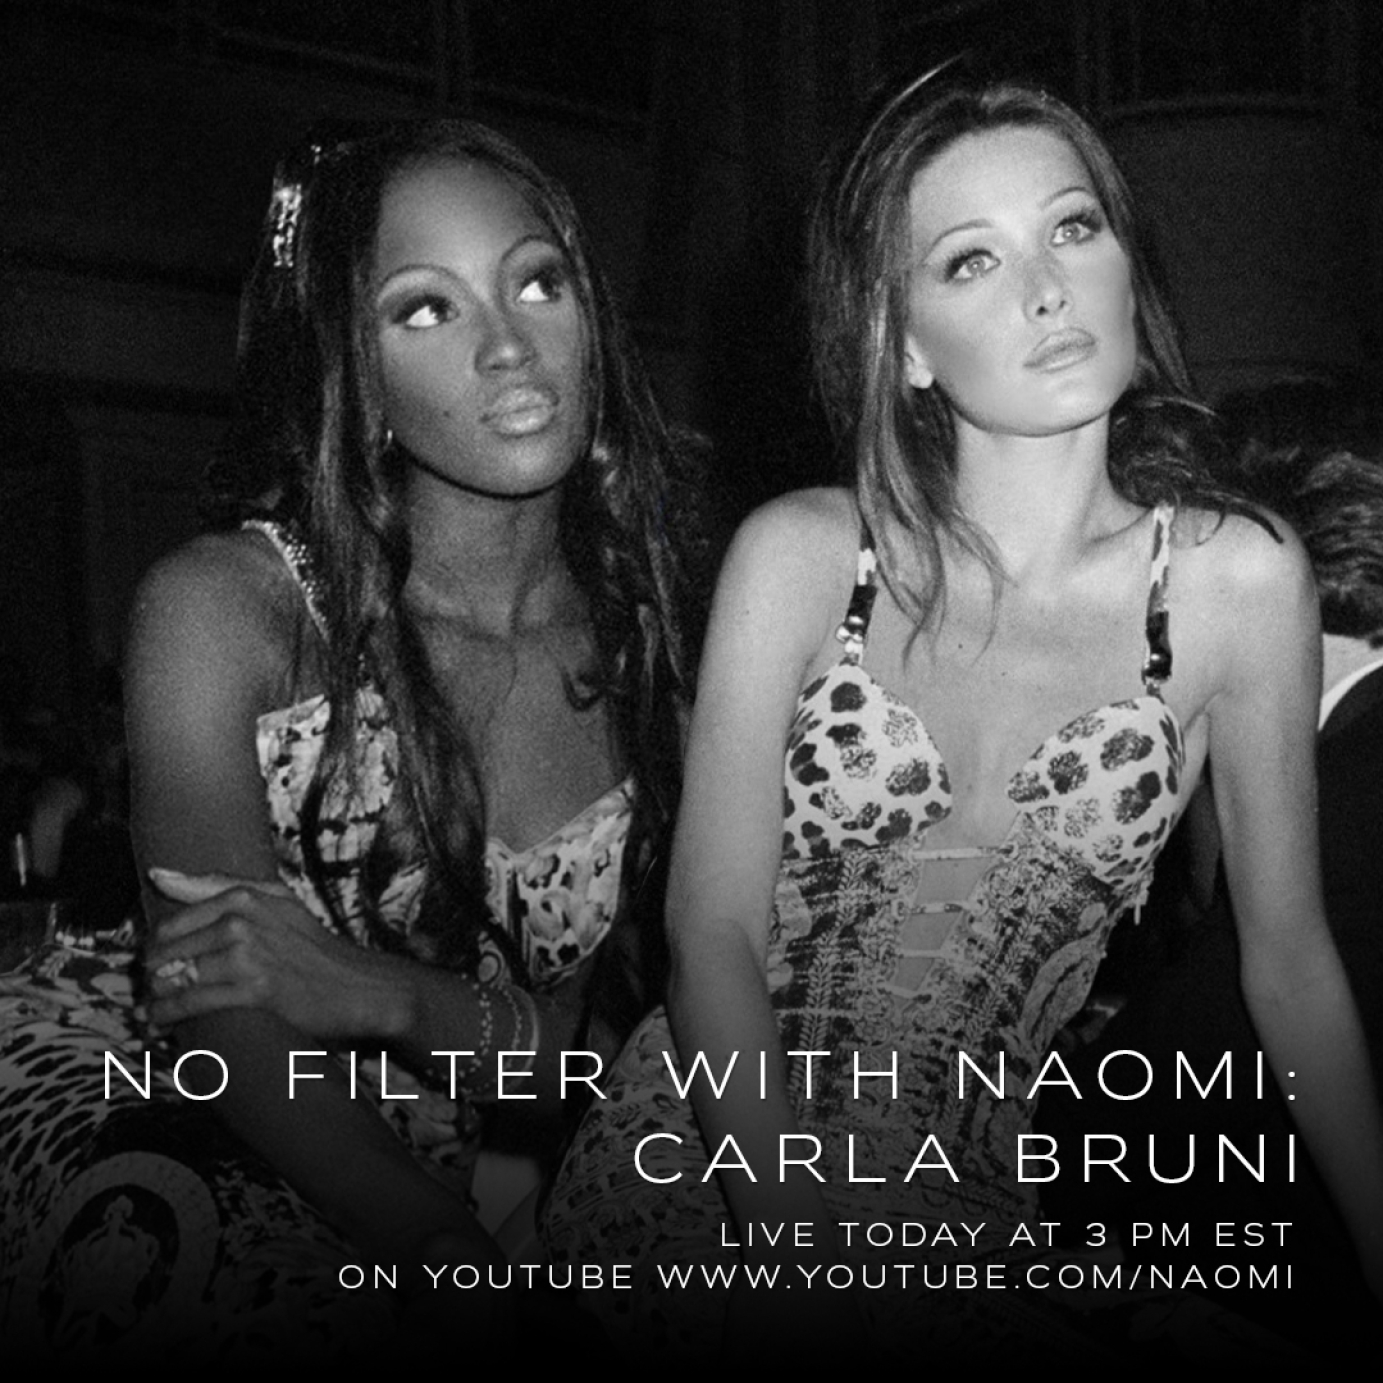 No filter with Naomi